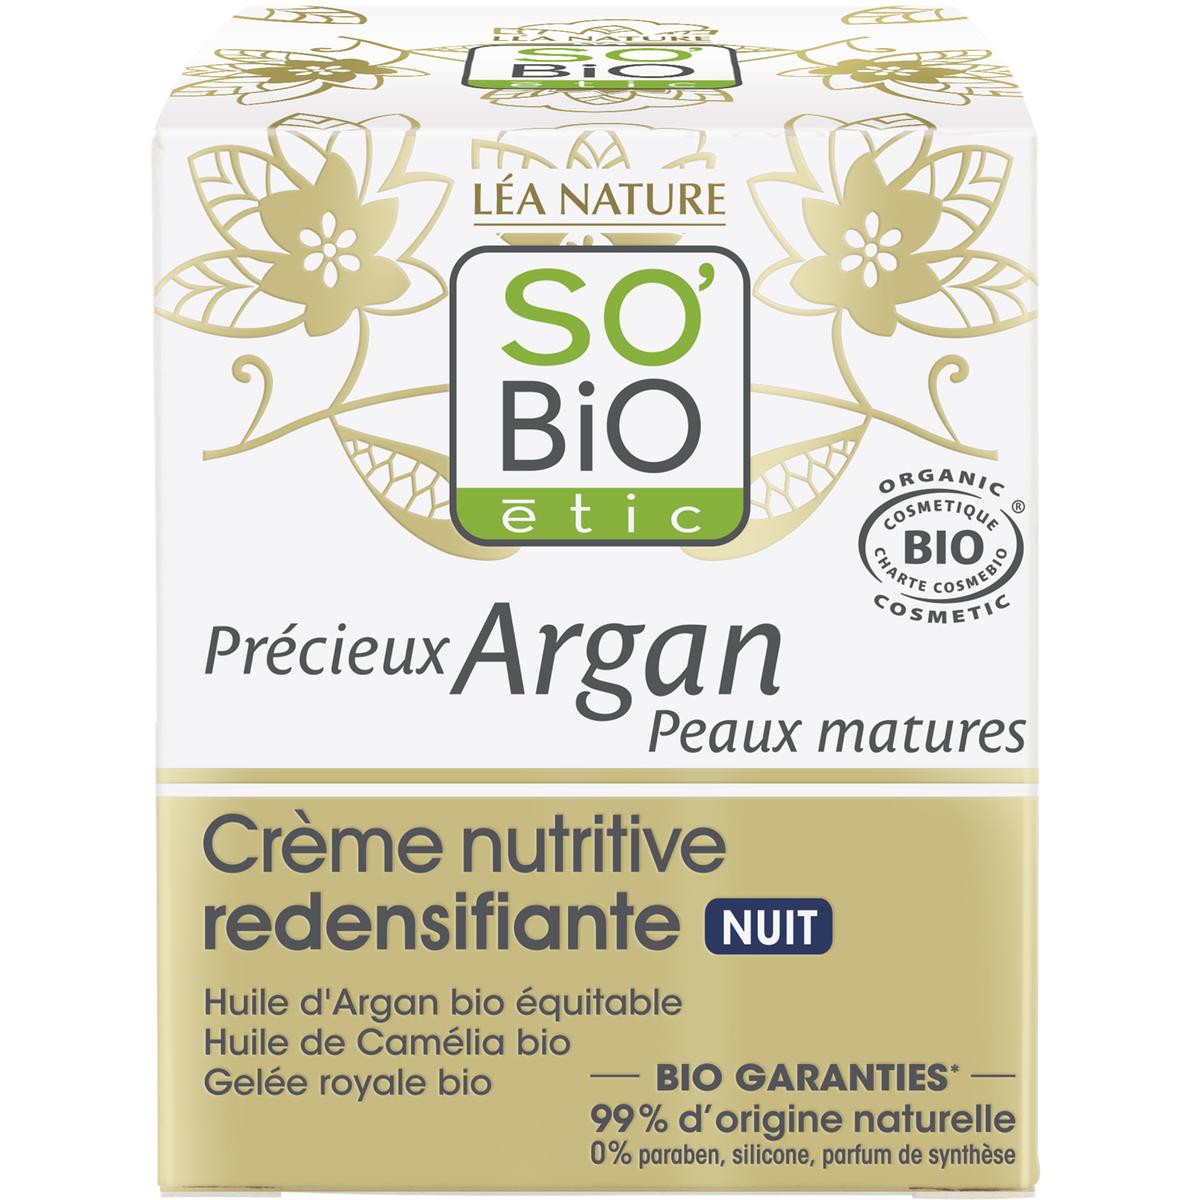 Vente Huile pure Argan Bio - Précieux argan - Léa Nature Boutique bio